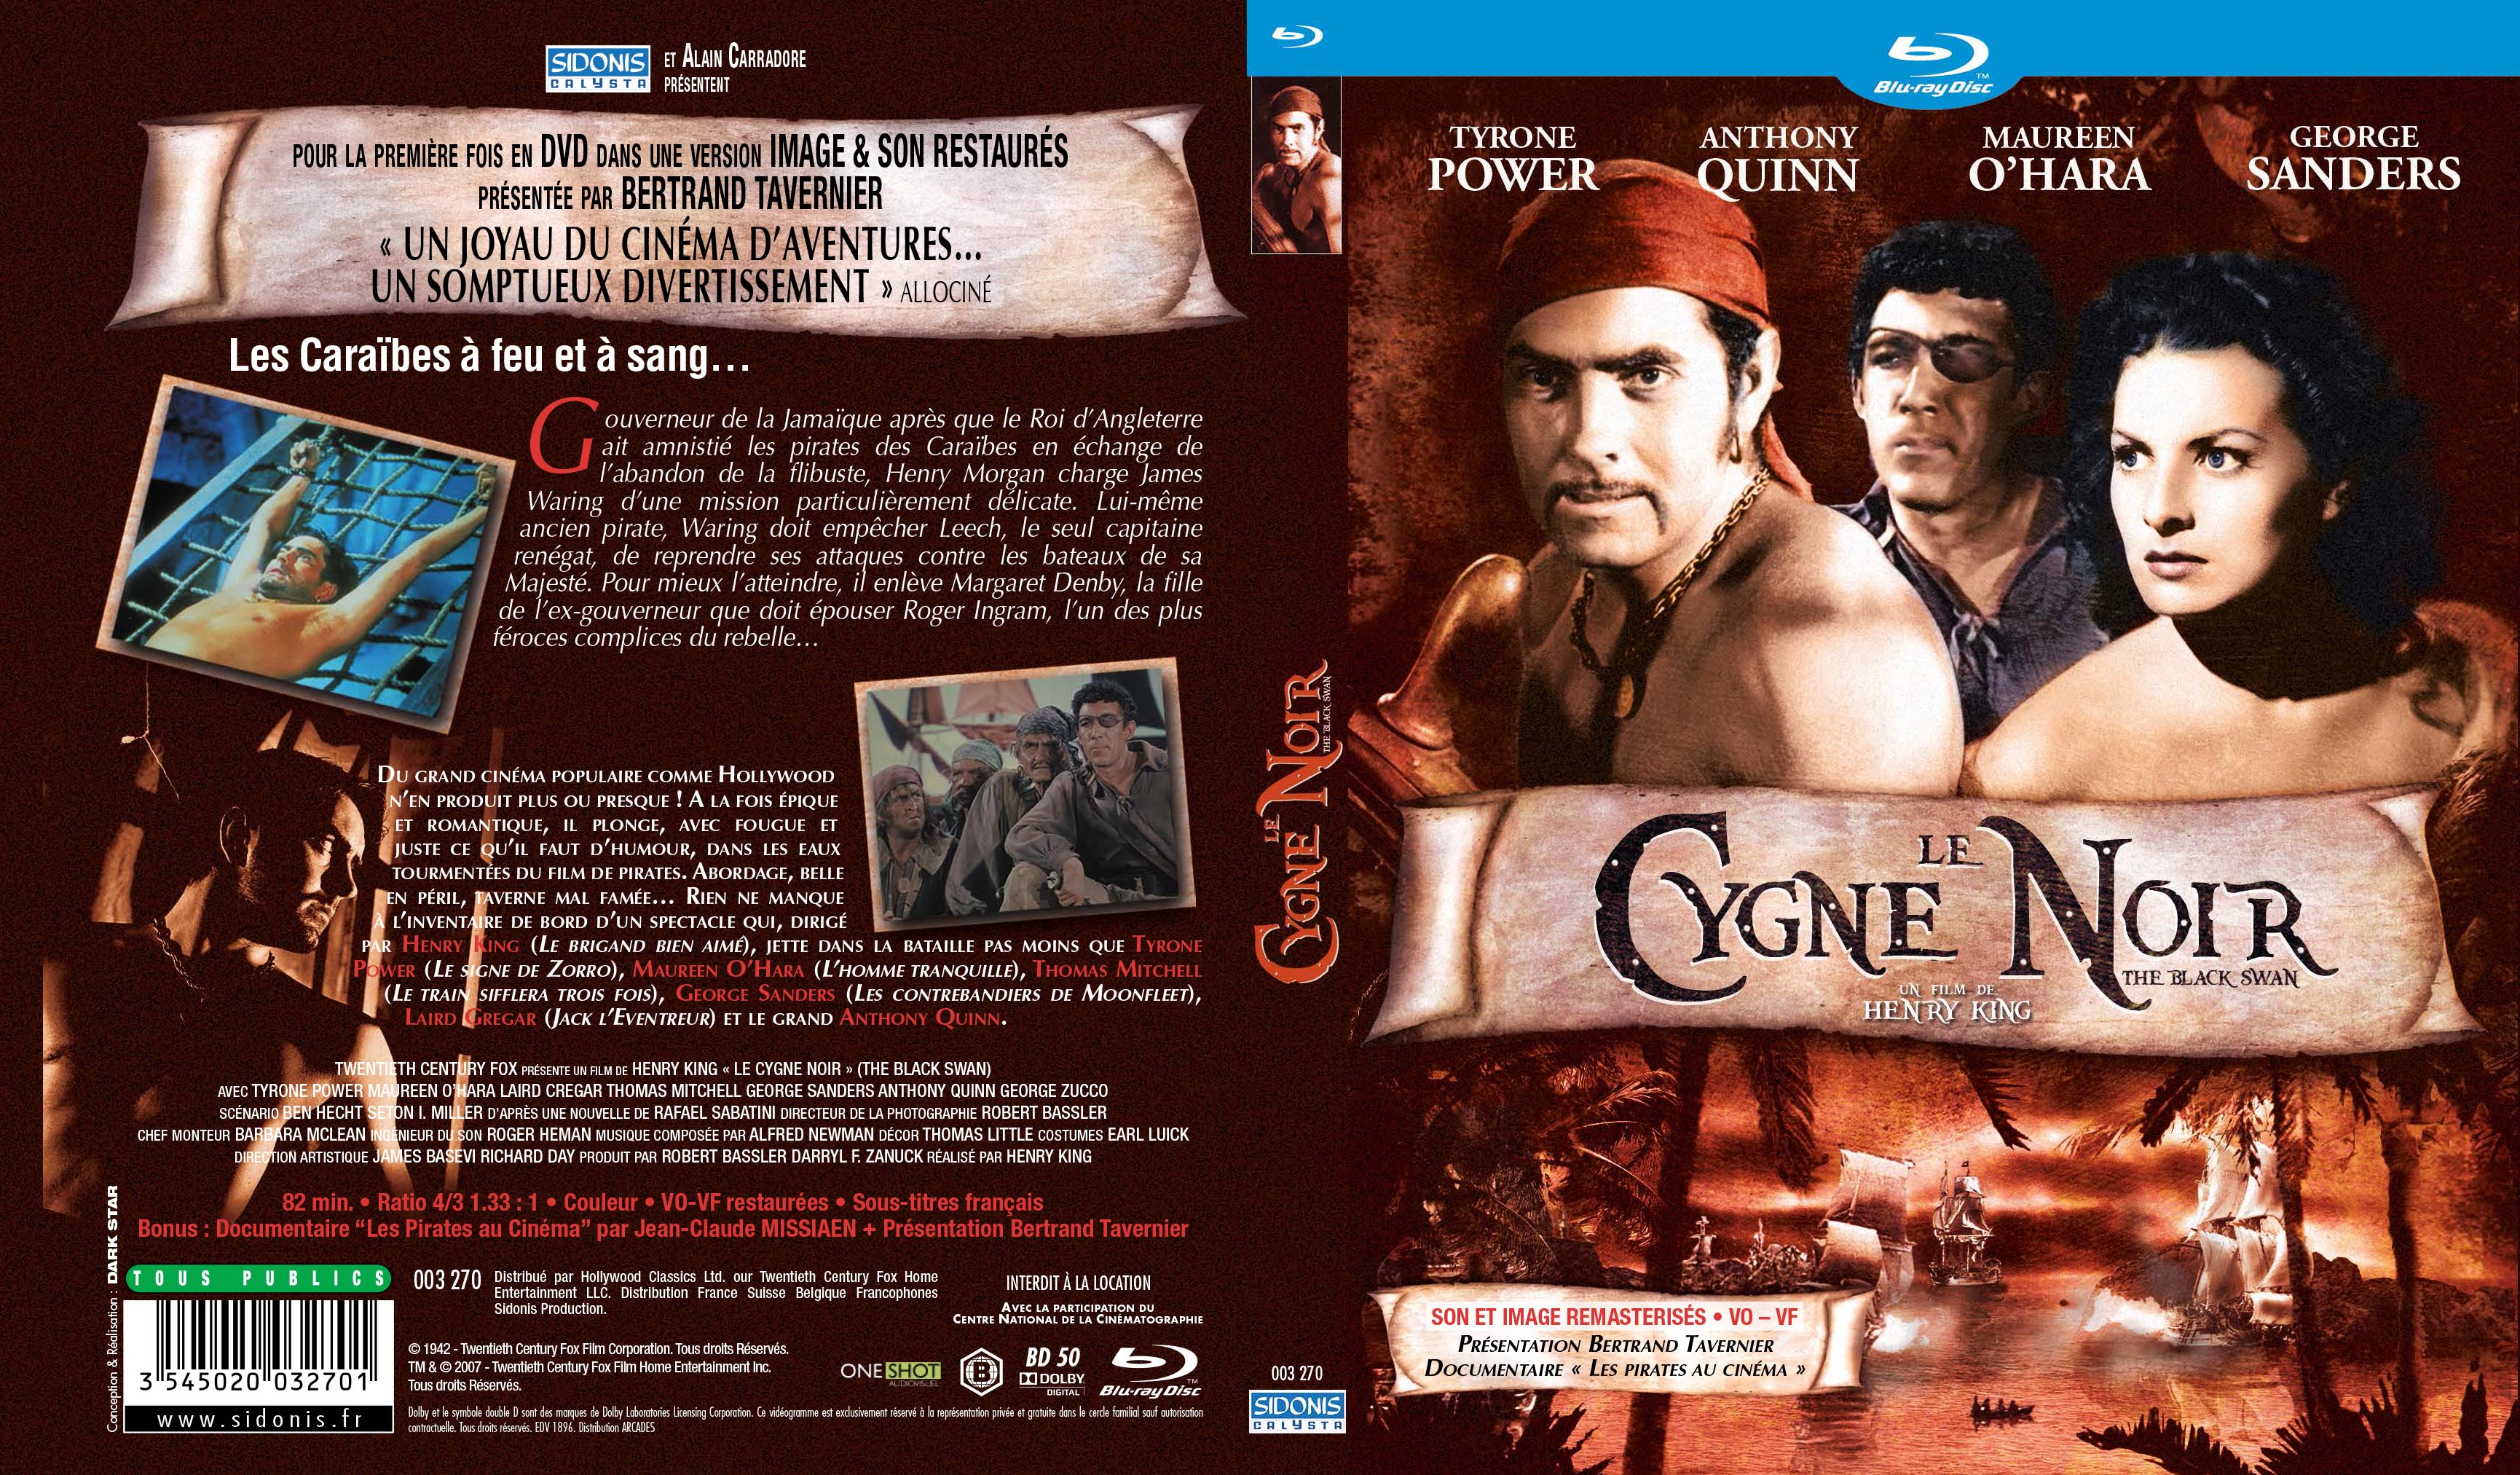 Jaquette DVD Le cygne noir (BLU-RAY)